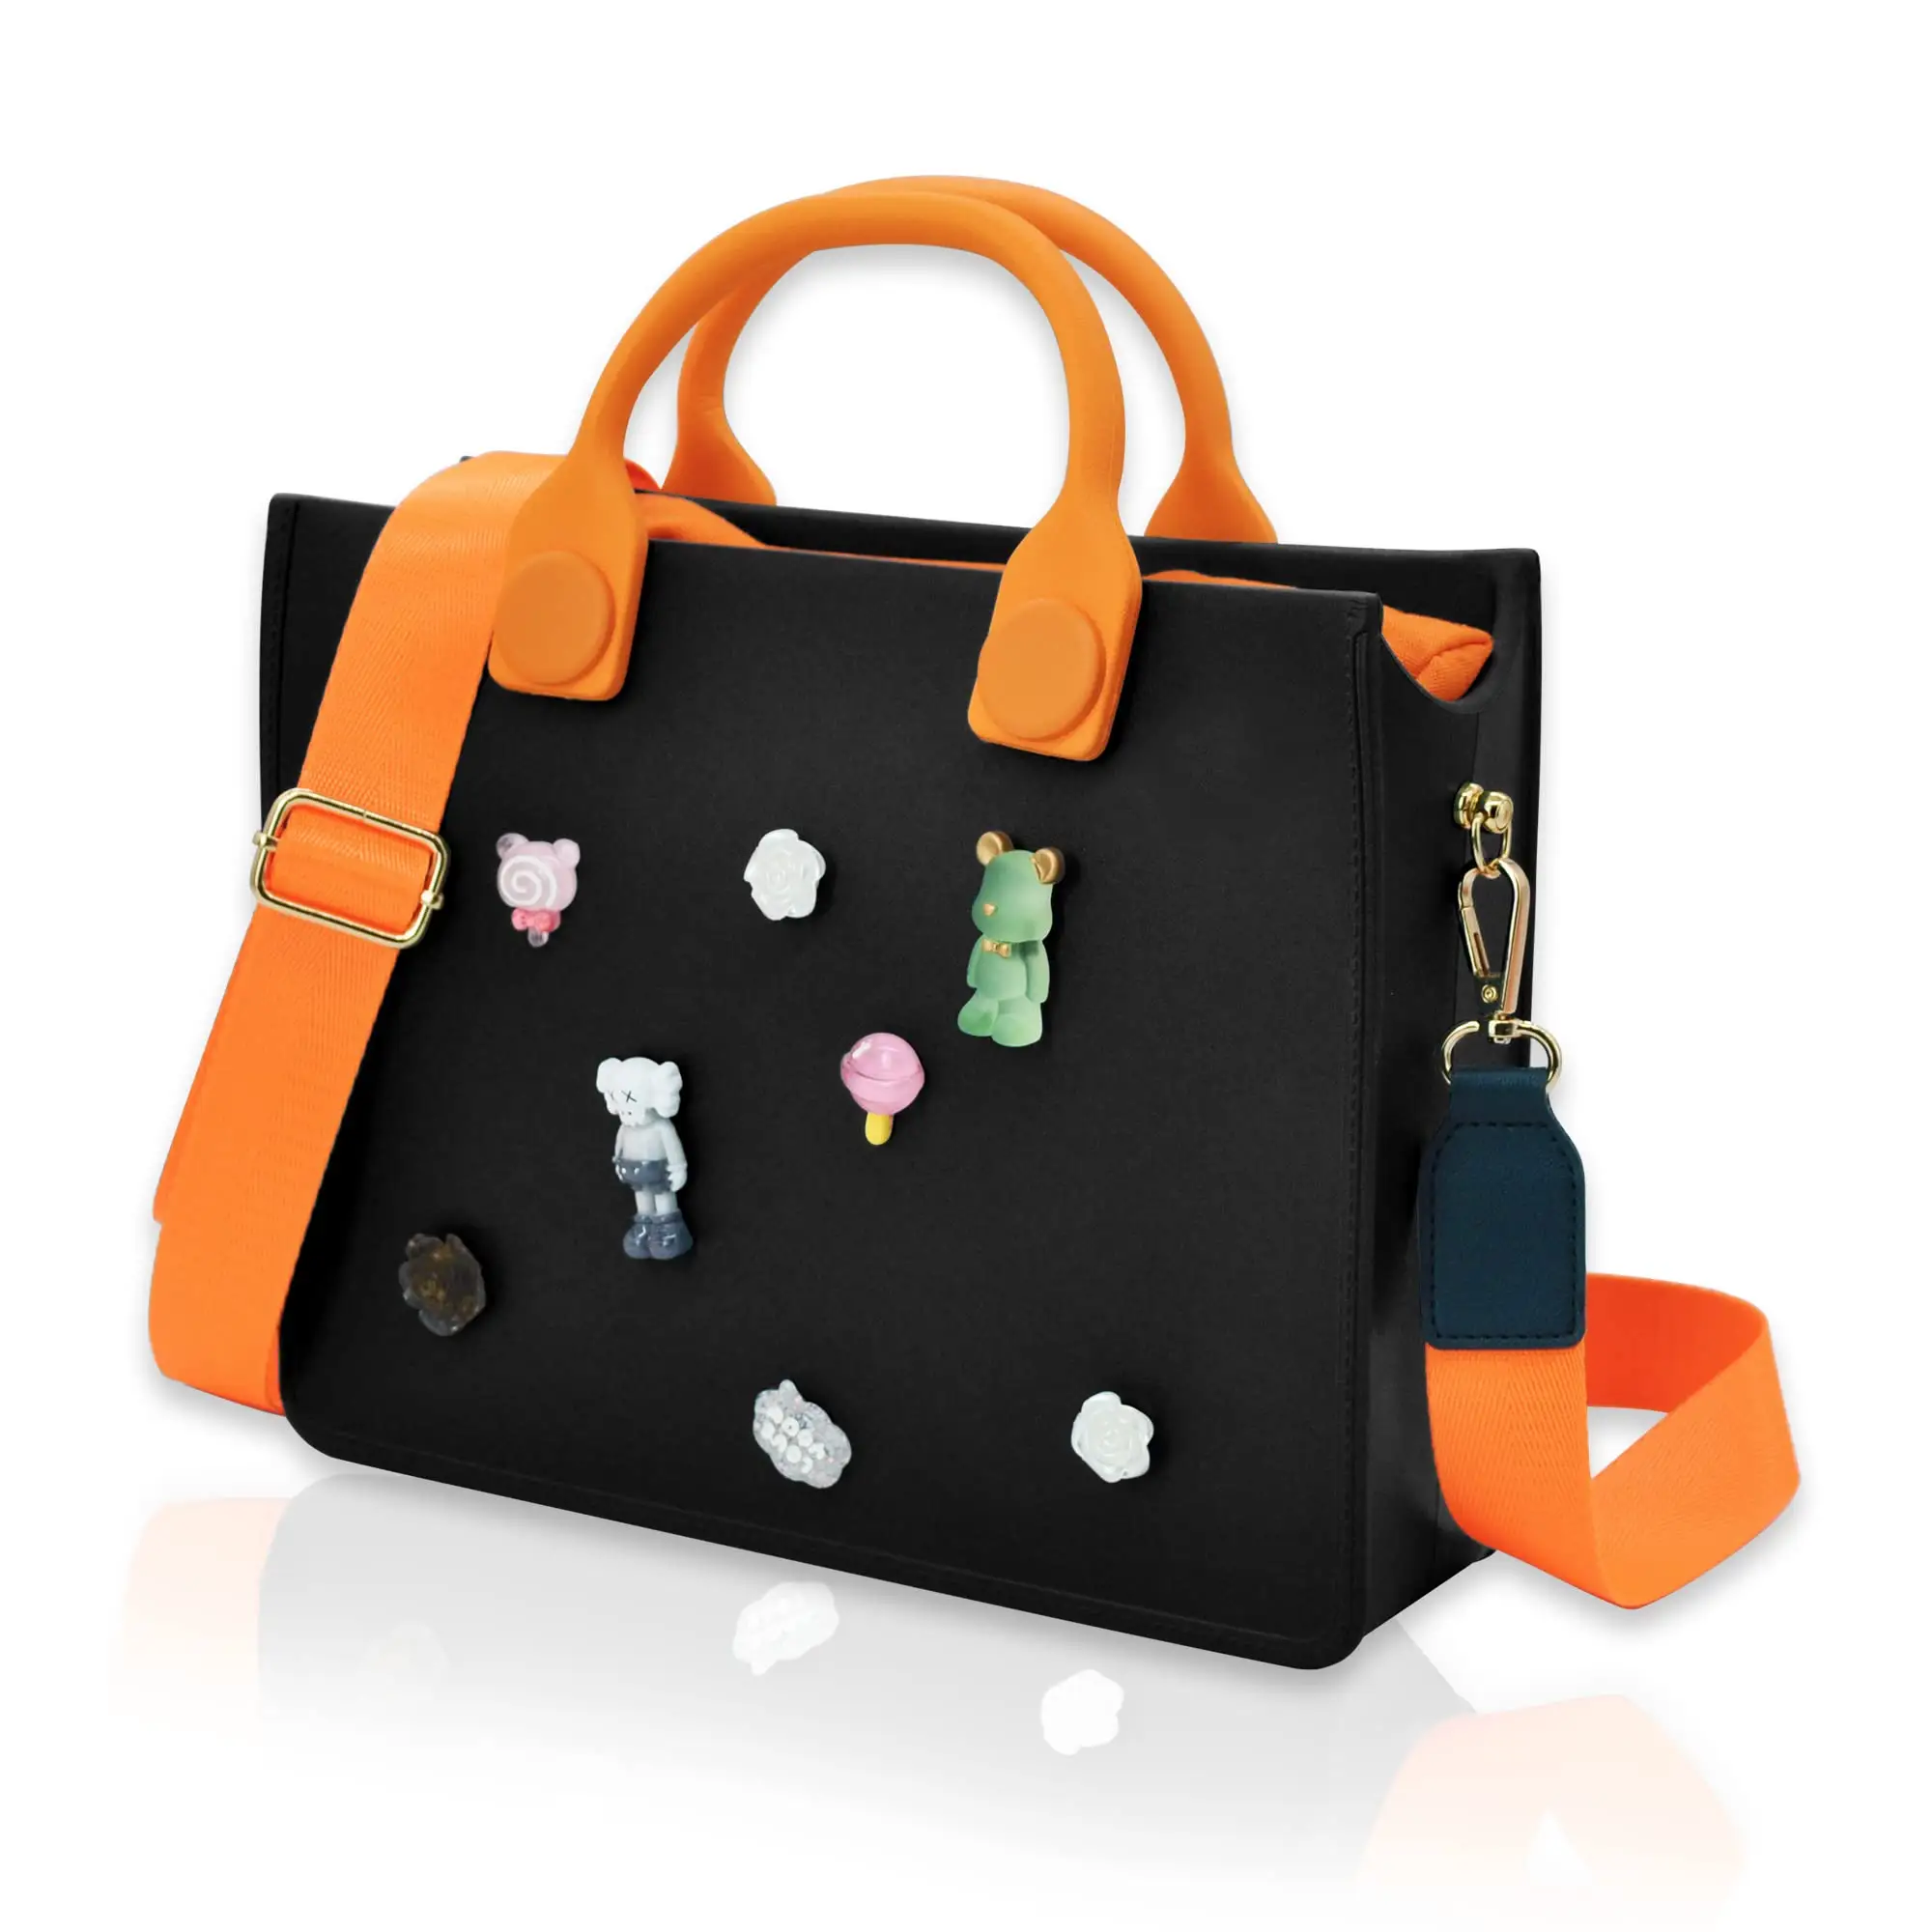 Yeni tasarım popüler moda açık Commuting omuz Crossbody küçük çanta gibi çanta ile iç çanta